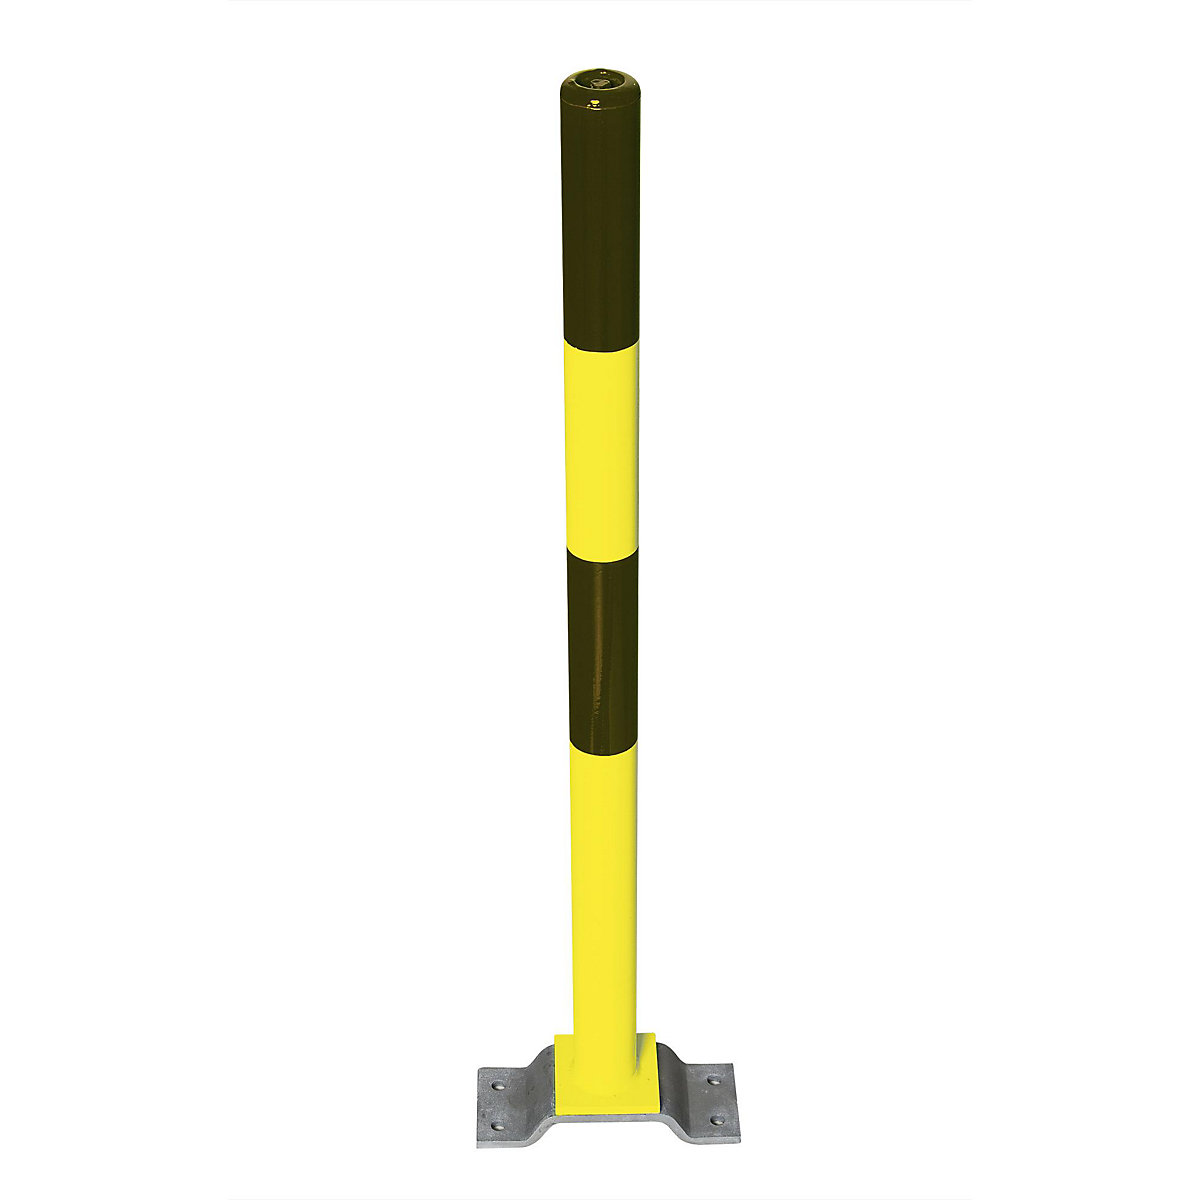 Zahradzovací stĺpik z ocele, na pripevnenie hmoždinkami, Ø 60 mm, čierno-žltý, 2 reťazové oká-5